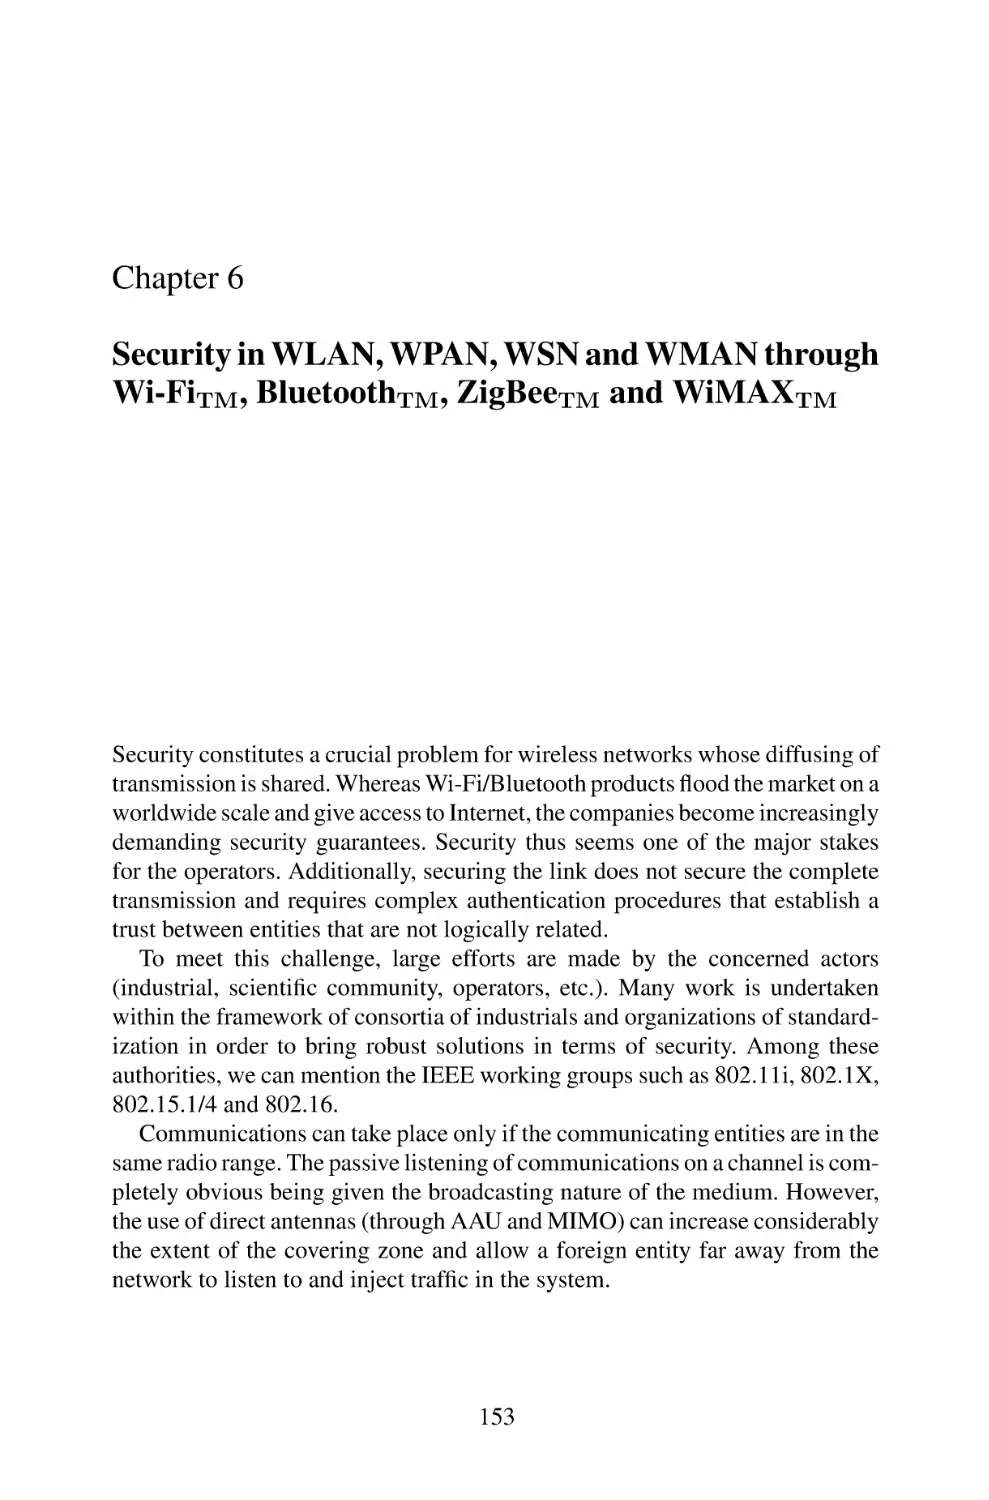 6 Security in WLAN, WPAN, WSN and WMAN through Wi-Fi, Bluetooth, ZigBee and WiMAX.pdf